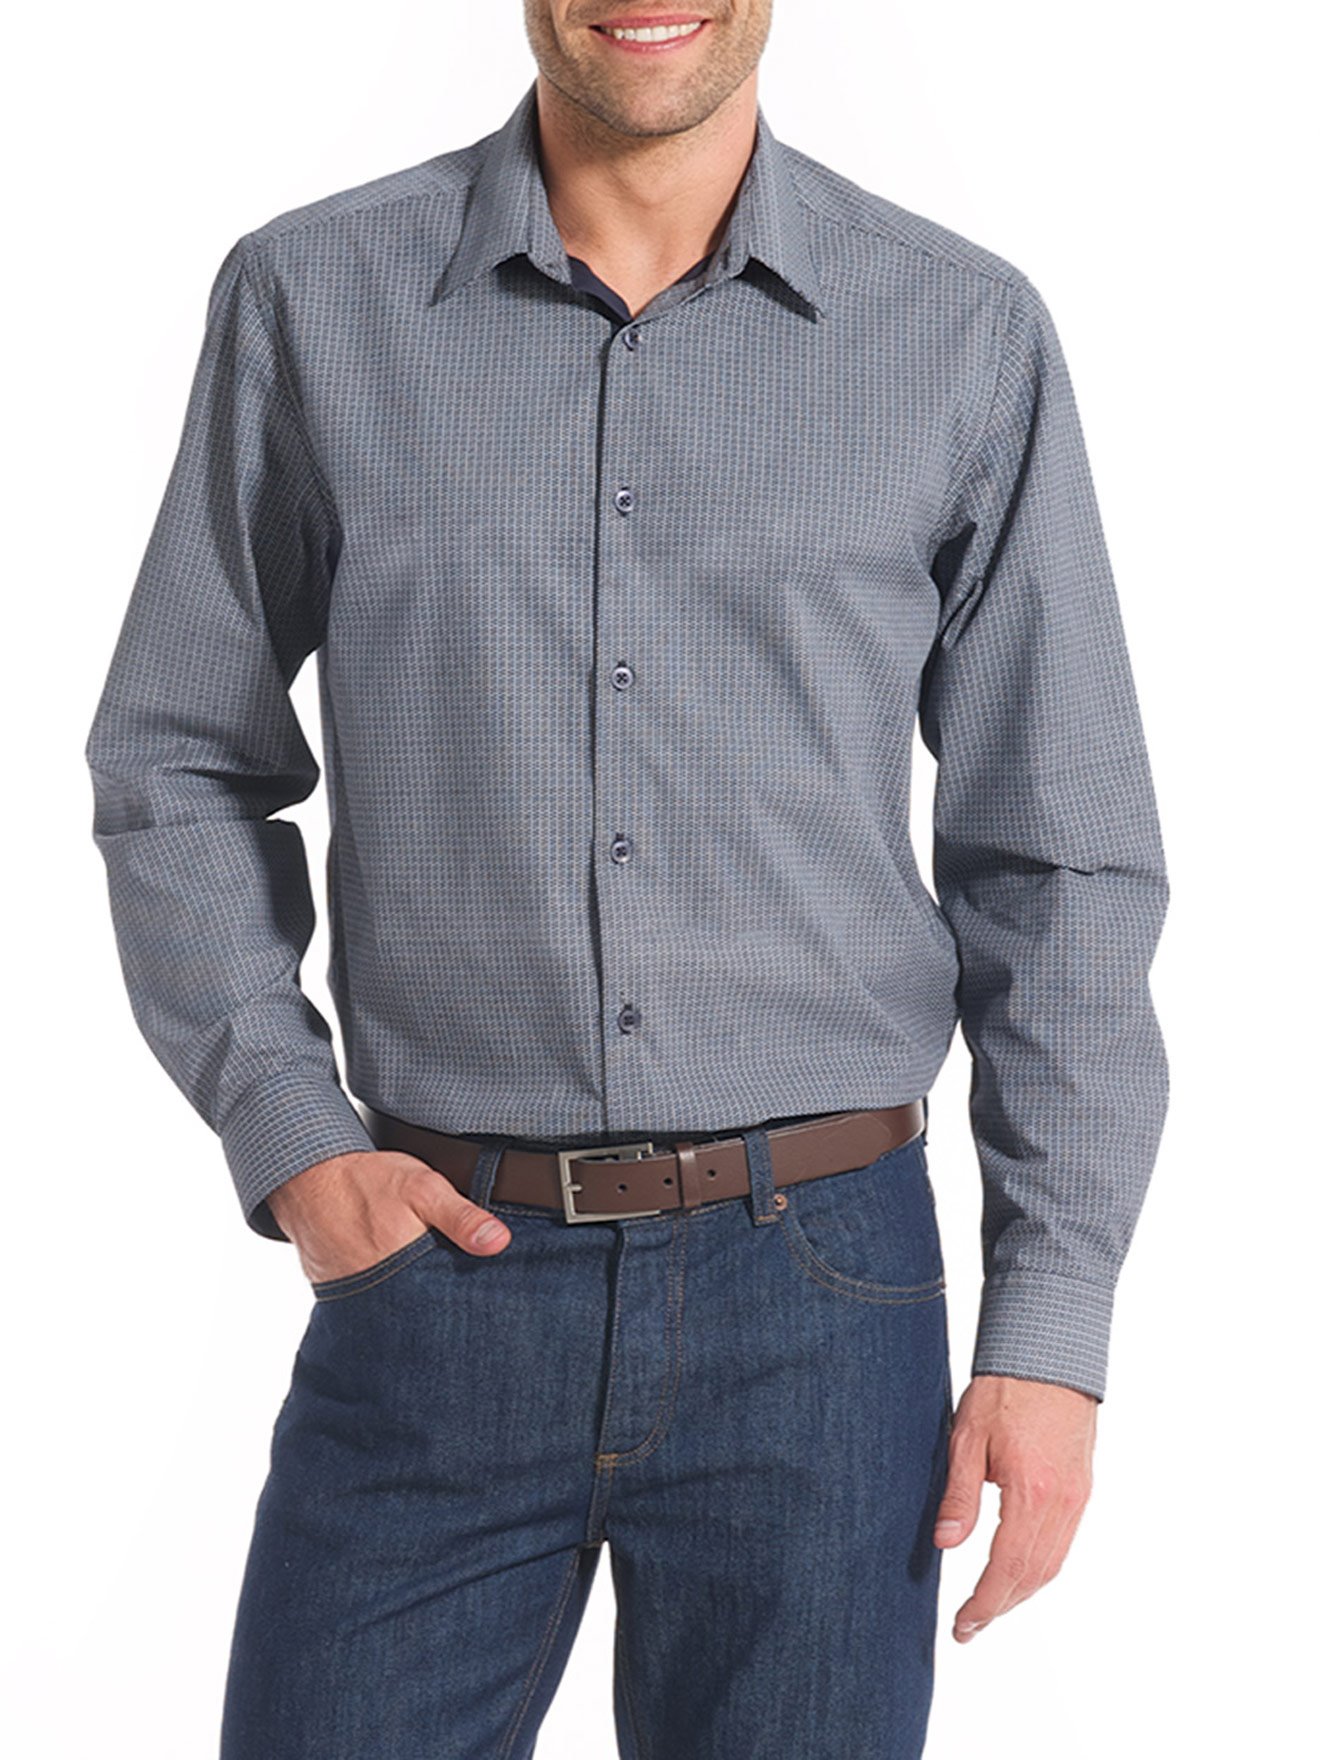 Homme Grande Taille Rayure Jupe Coton Chemise De Poche Manches Longues Affaires Travail Les Loisirs Chemise Noir Bleu Gris 5Xl 